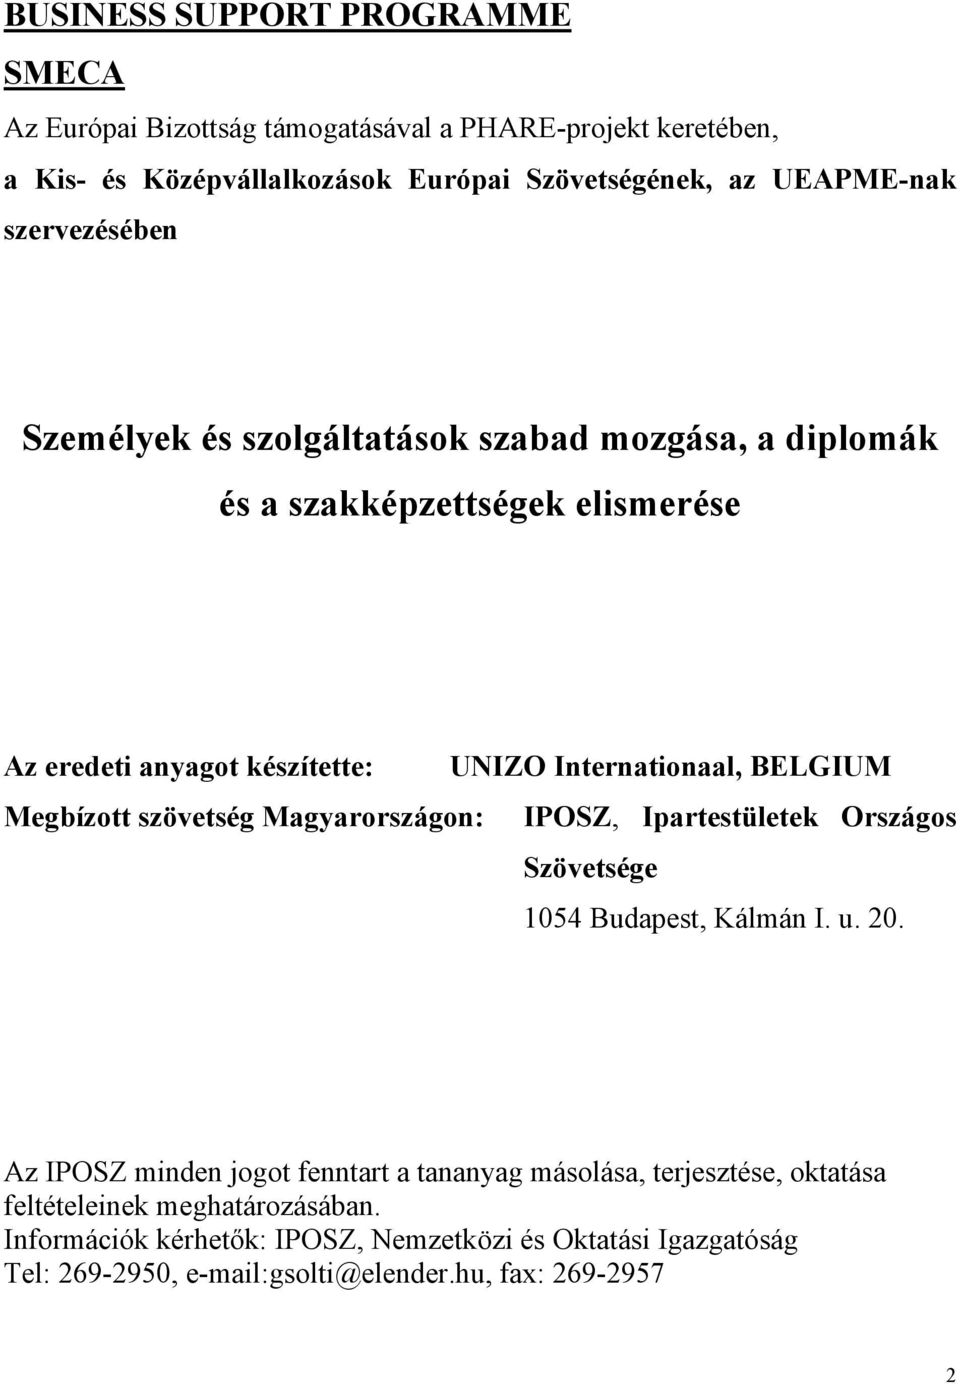 Megbízott szövetség Magyarországon: IPOSZ, Ipartestületek Országos Szövetsége 1054 Budapest, Kálmán I. u. 20.